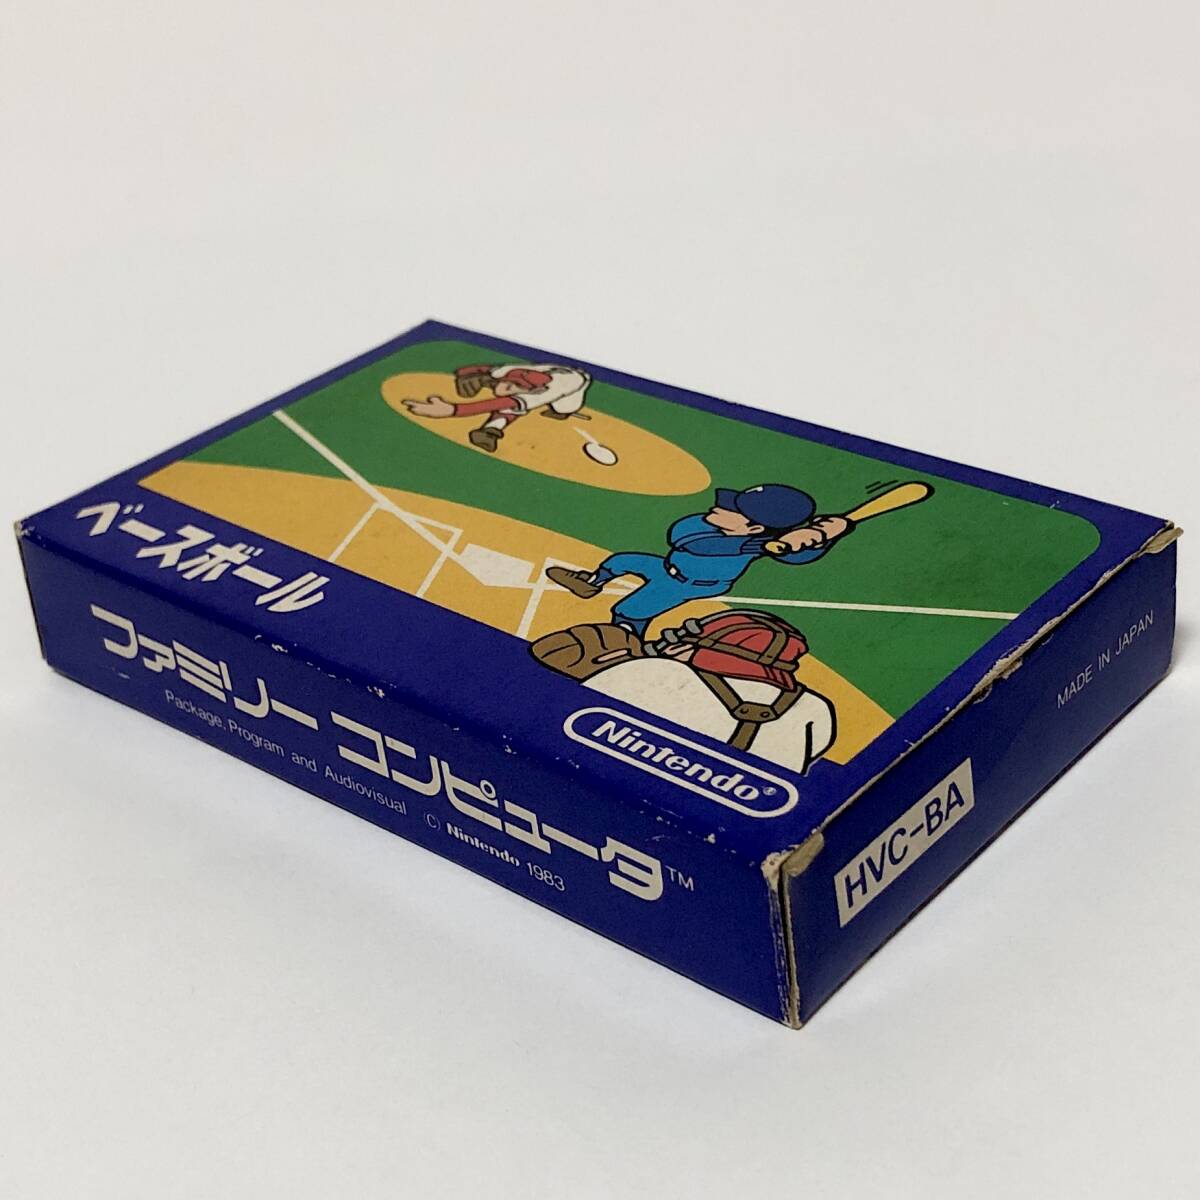 ファミコン ベースボール 小箱版 箱説付き 痛みあり 操作法早見図付き Nintendo Famicom Baseball Small Box Version CIB Testedの画像4